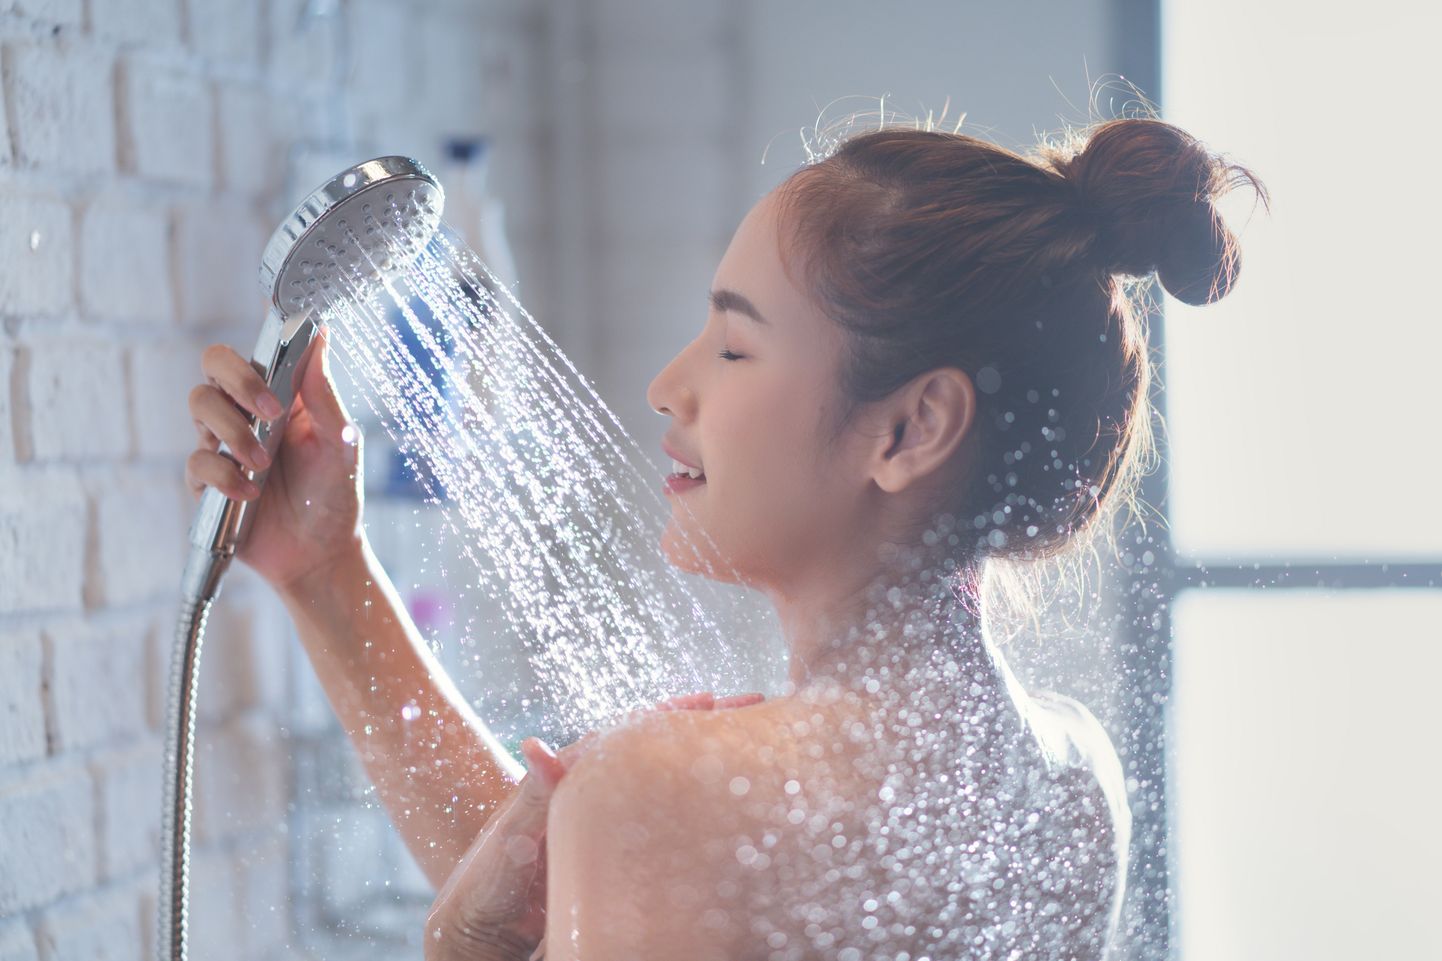 Külma duši eeliste hulka kuuluvad ilusam jume ning parem immuunsüsteem.